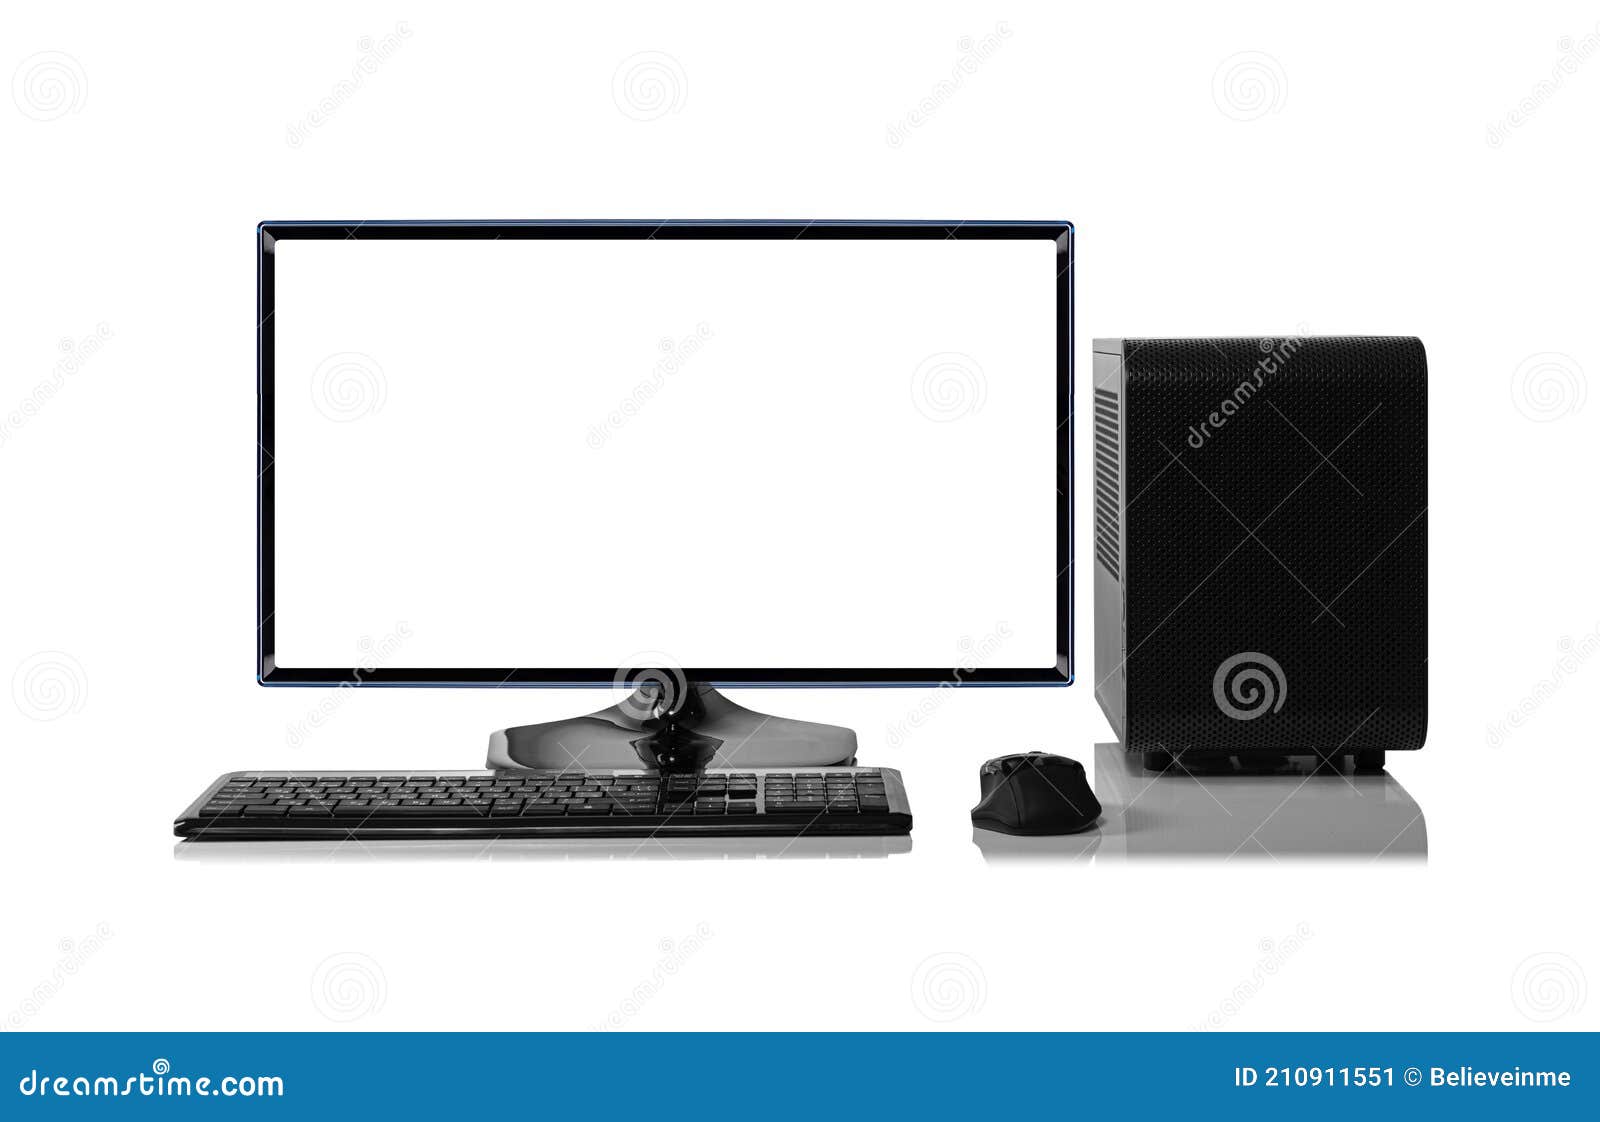 Nếu bạn đã mệt mỏi với các hình nền màu đen hoặc các biểu tượng khác nhau trên màn hình máy tính của mình, hãy thử sử dụng máy tính desktop trên nền trắng để mang đến cảm giác trẻ trung và thoải mái cho mắt của bạn.